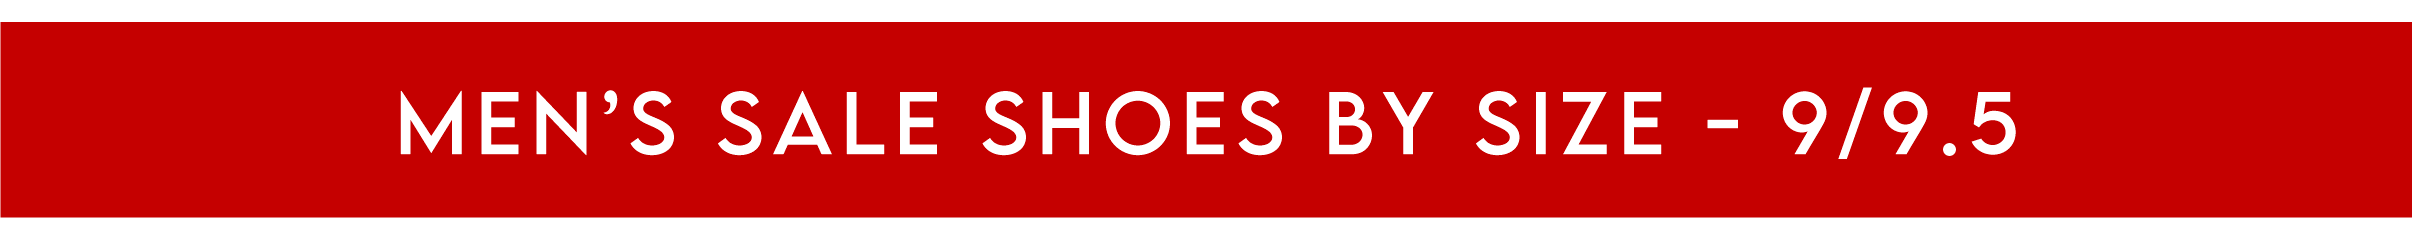 Men's Shoe Sale